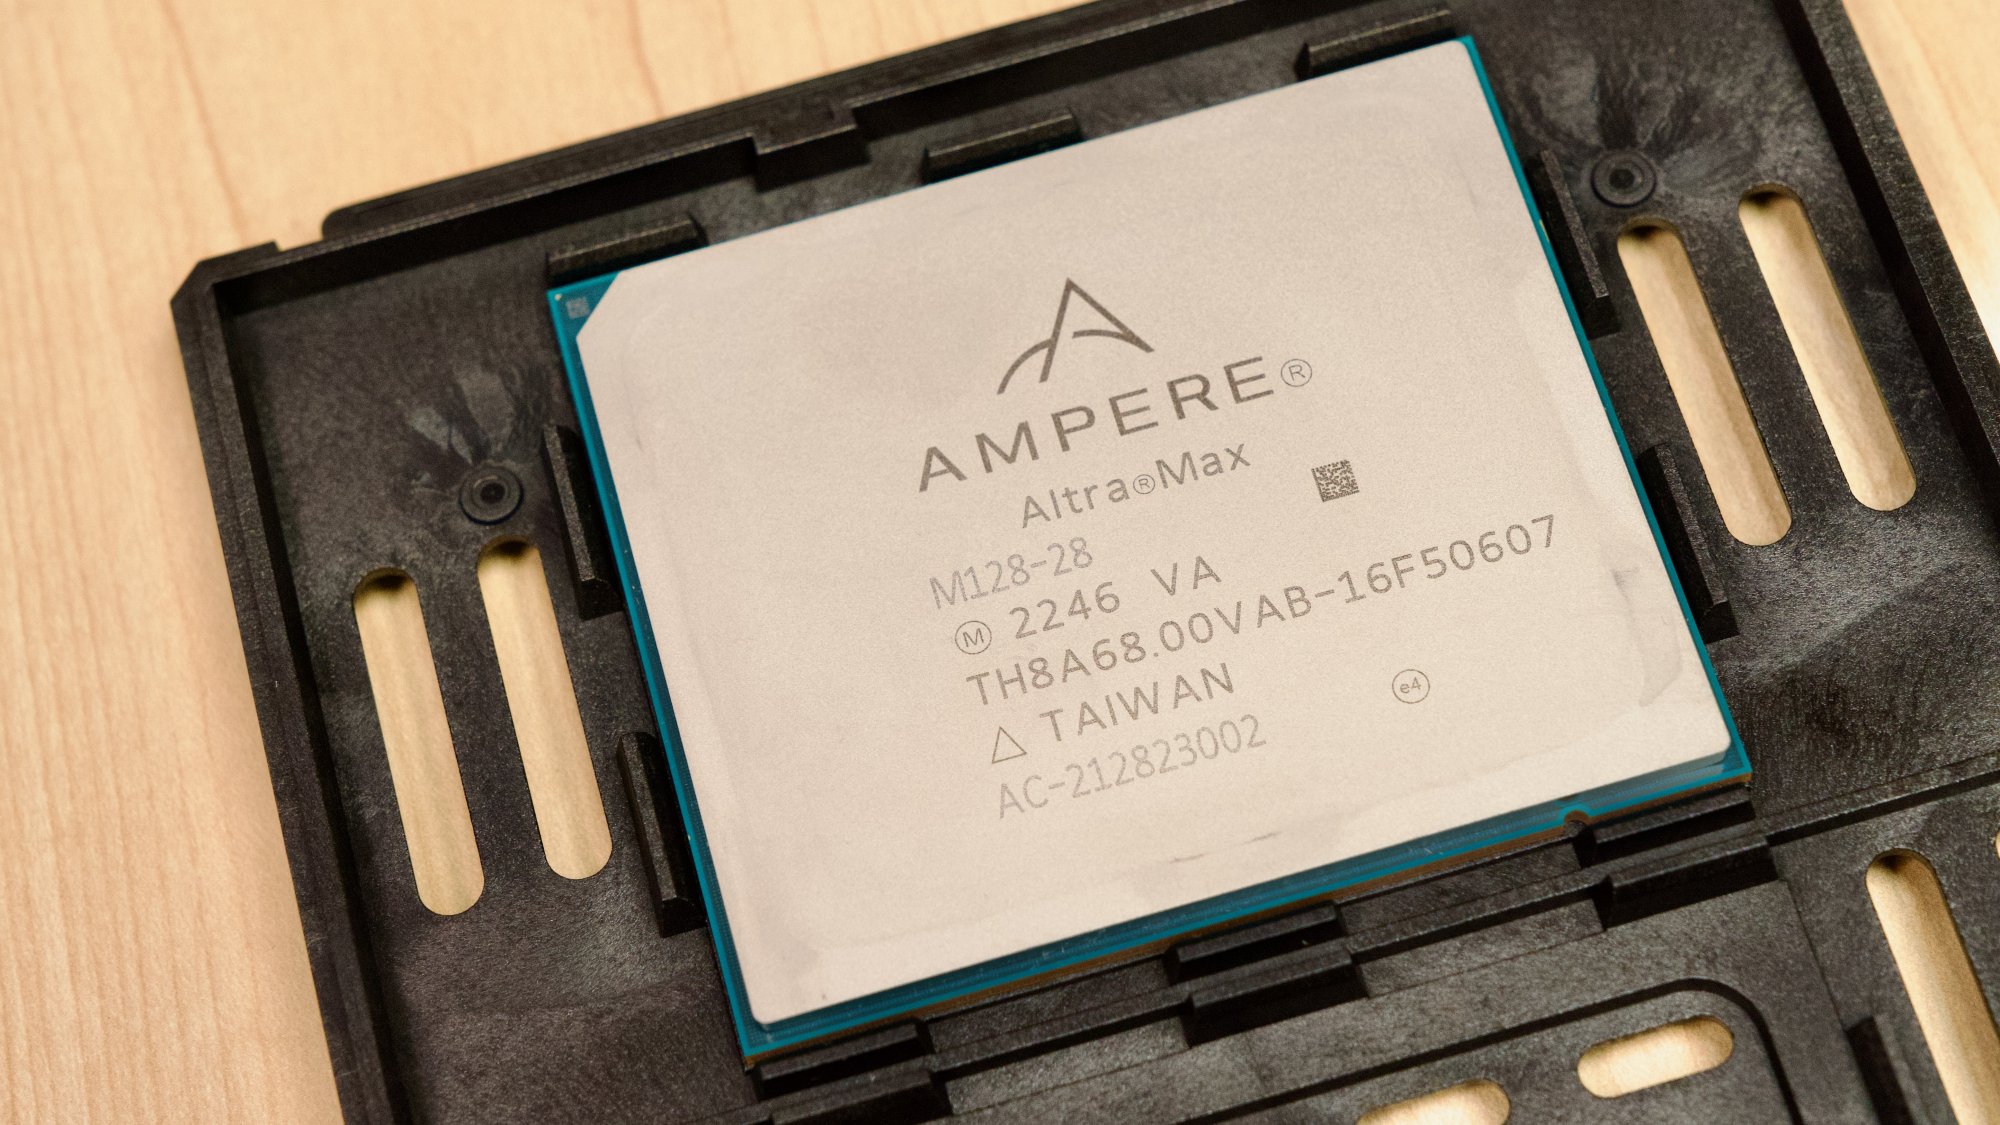 Ampere Altra Max M128-28 CPU